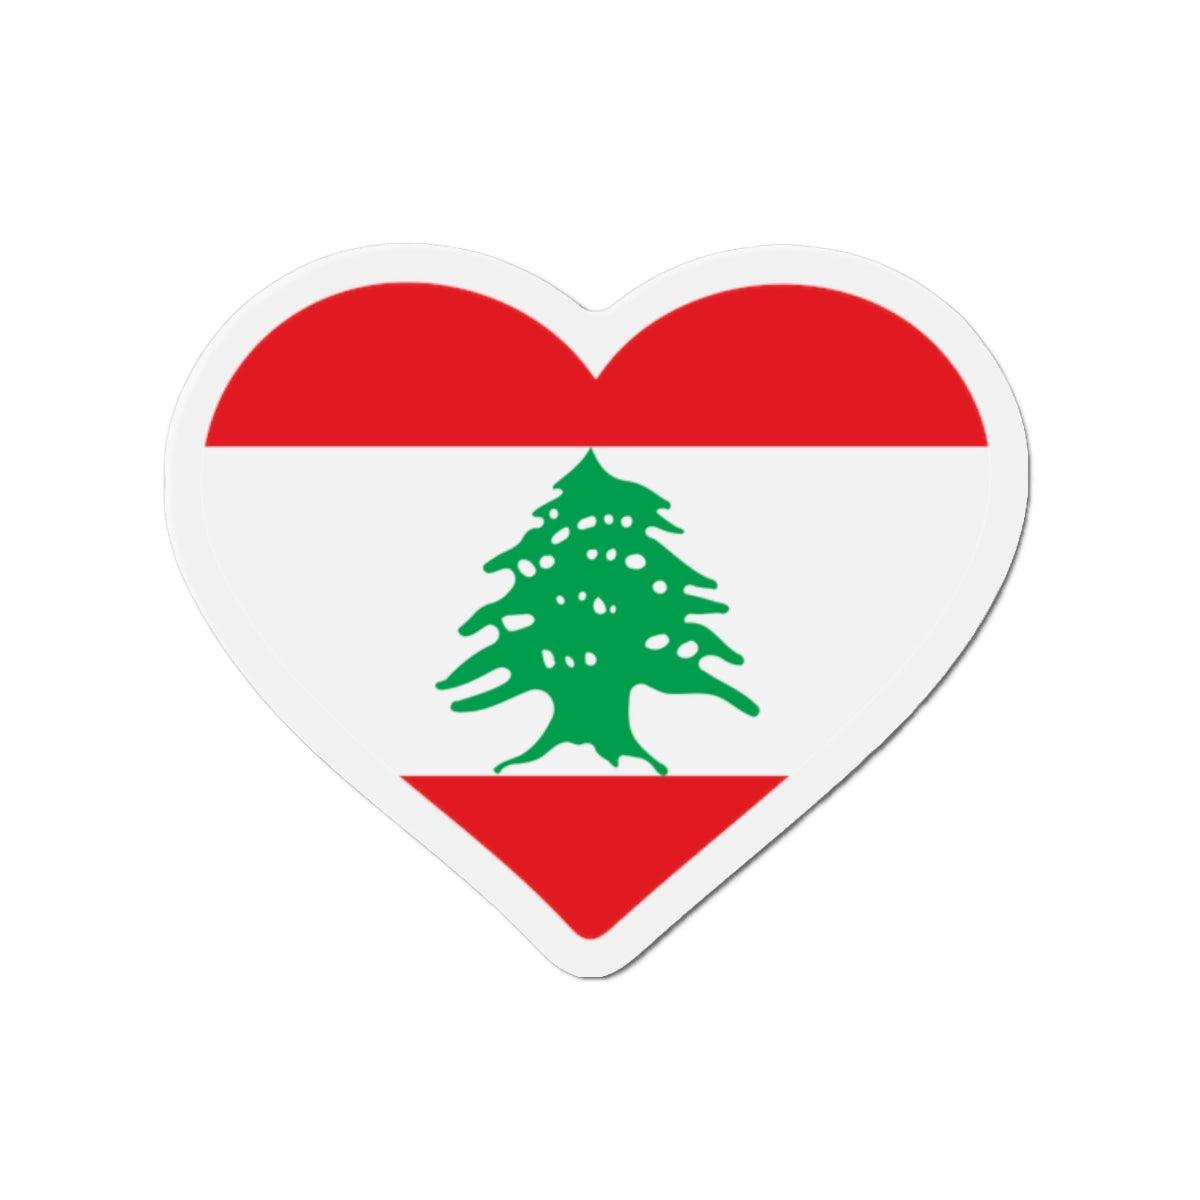 Aimant Coeur Drapeau du Liban en plusieurs tailles - Pixelforma 